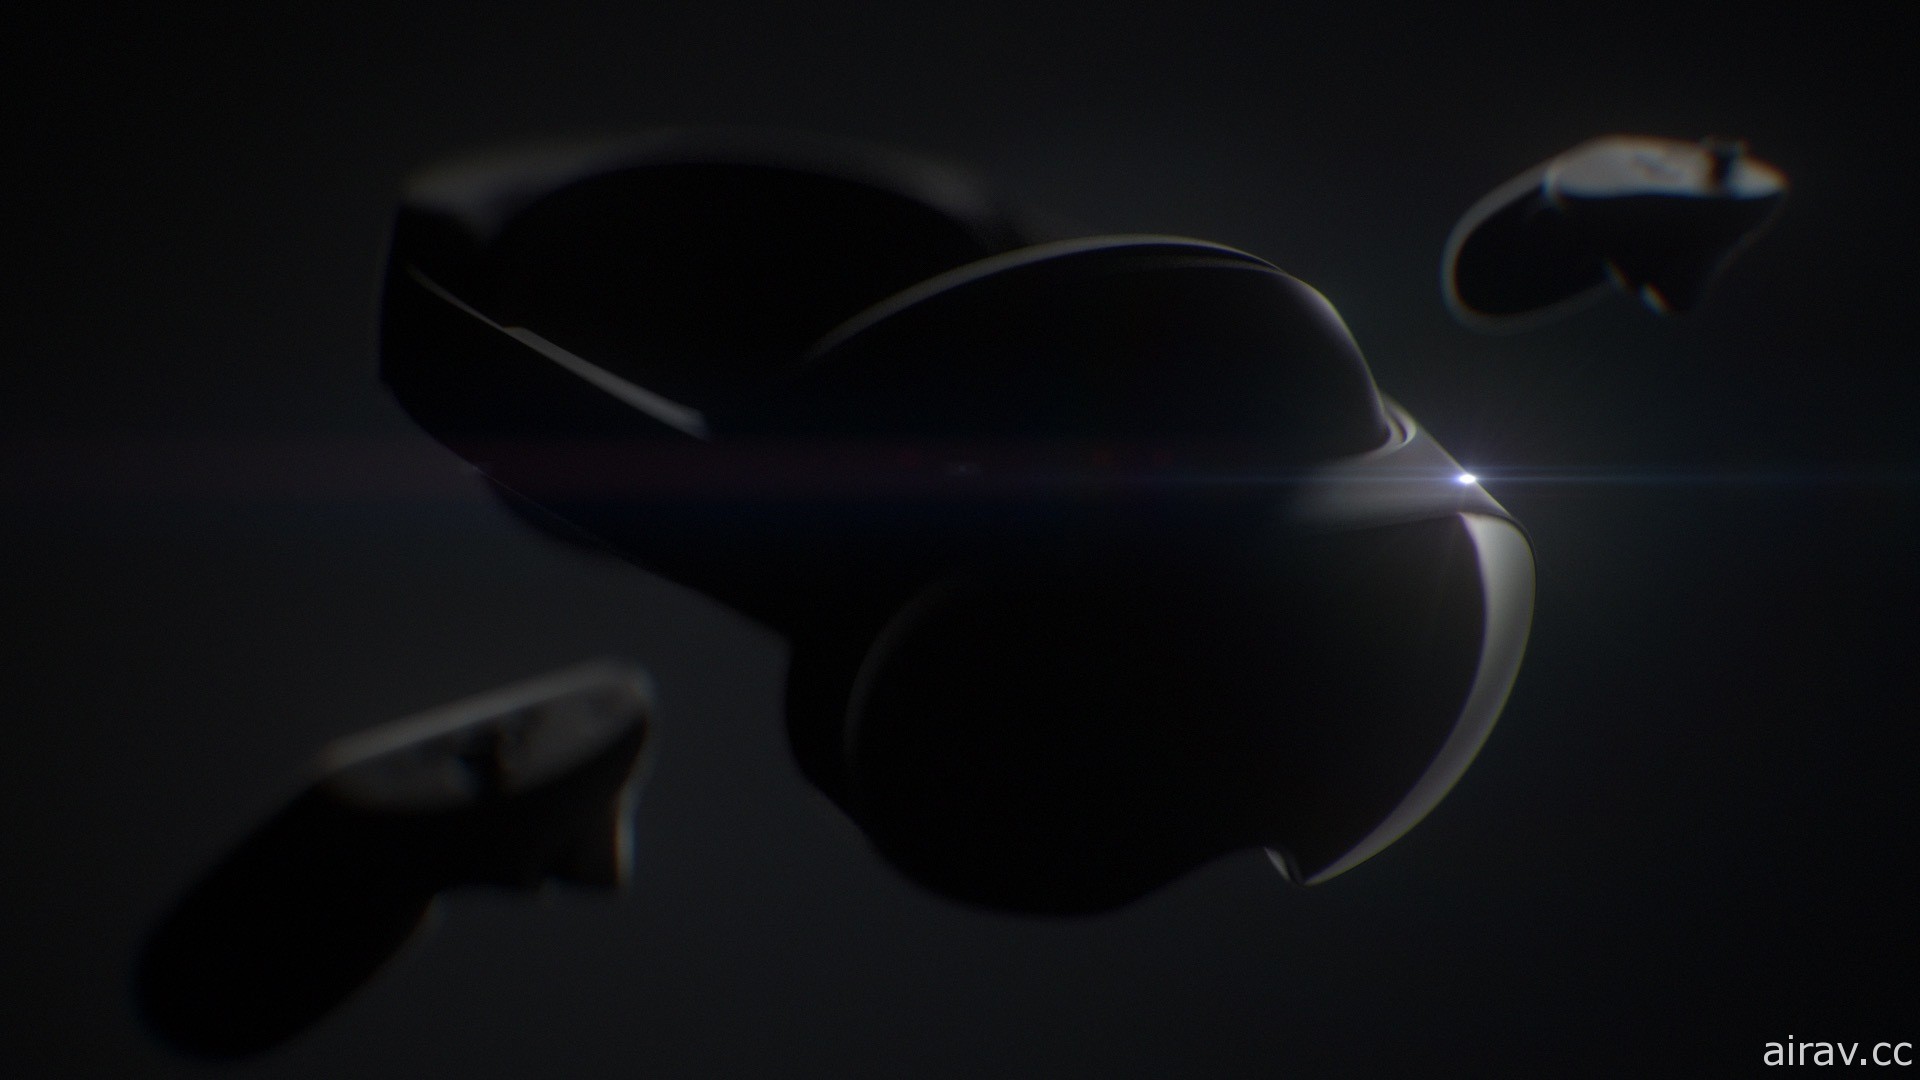 配合元宇宙願景的高階 VR 頭戴裝置「Project Cambria」現正研發中